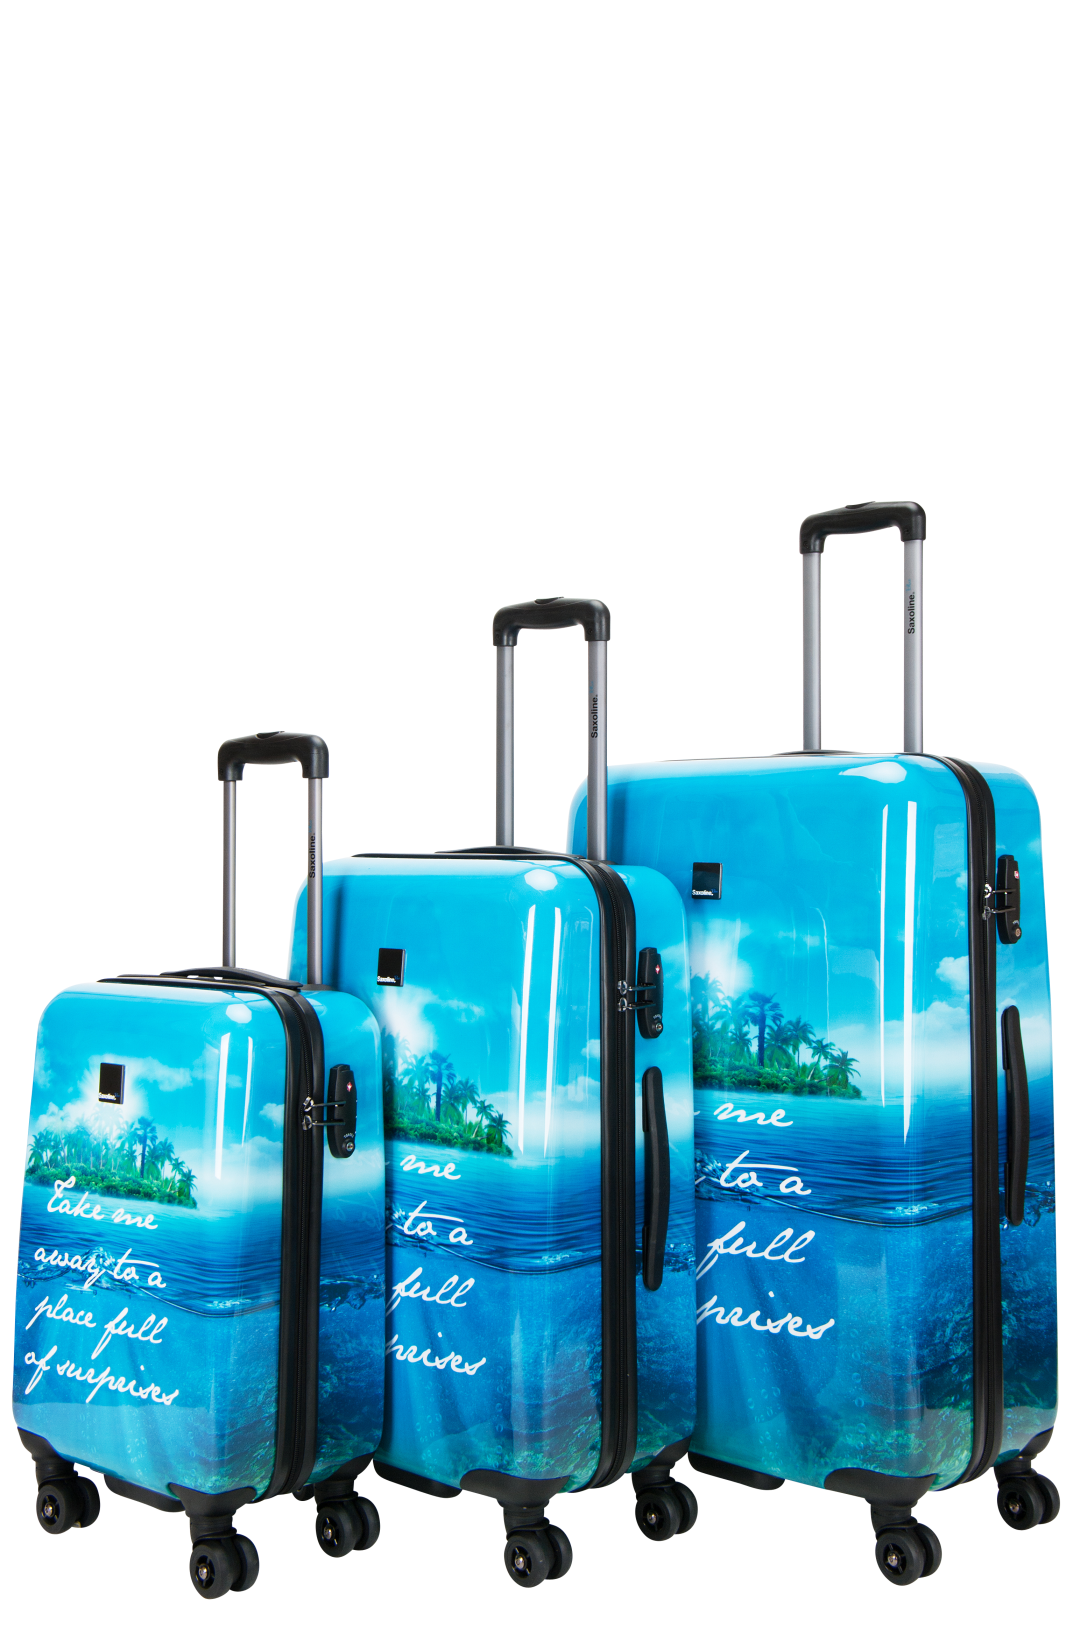 Saxoline Blue -  Island Print hard reiskofferset | luggage4u.be